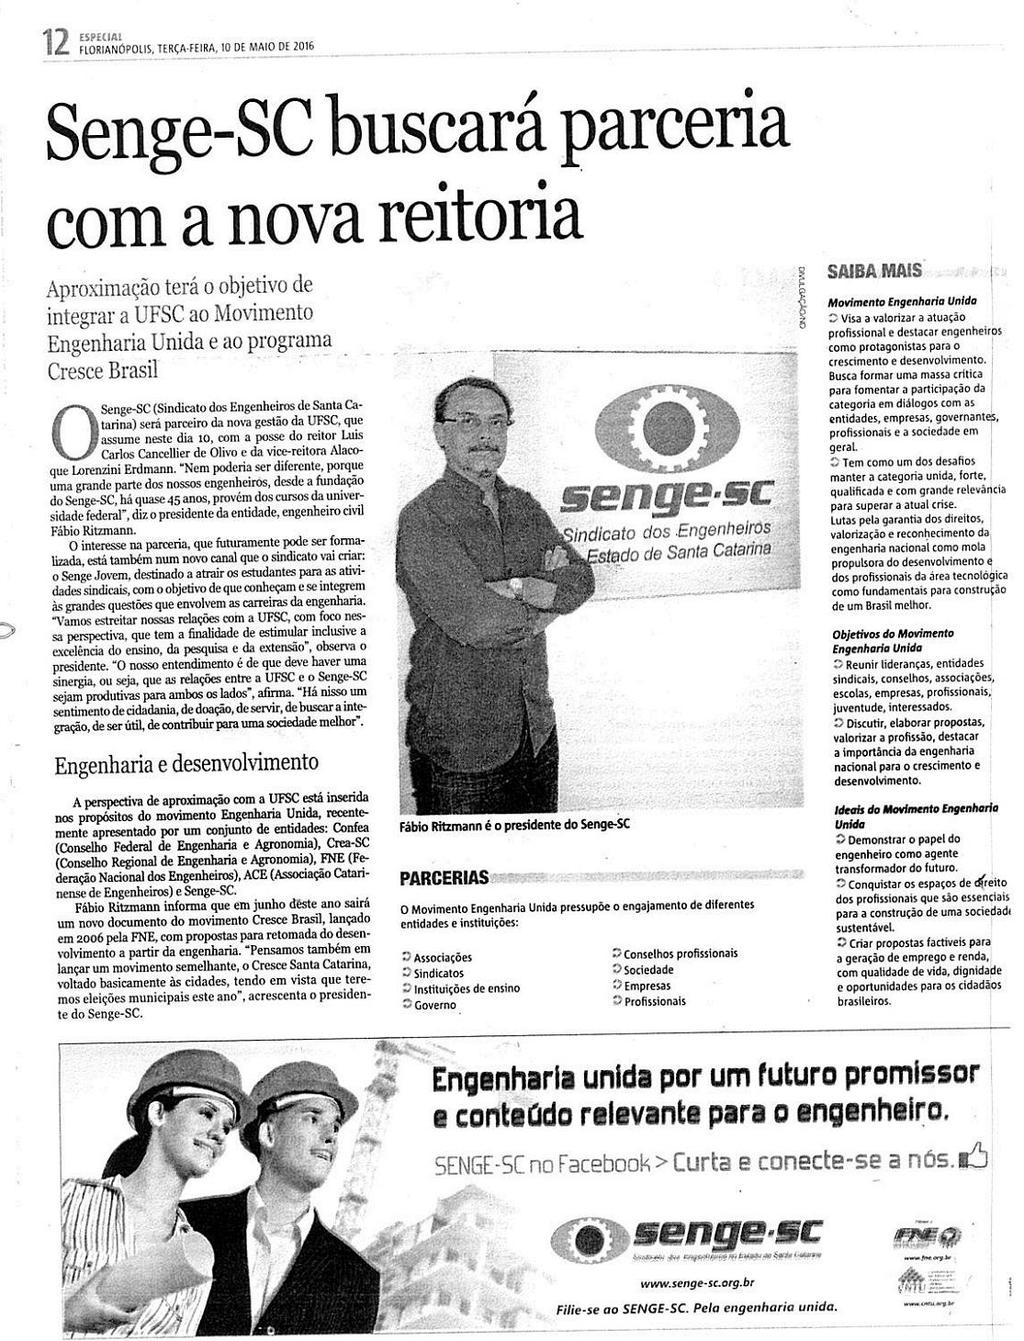 Notícias do Dia - Caderno Especial Senge-SC buscará parceria com a nova reitoria Senge-SC buscará parceria com a nova reitoria / UFSC / Movimento Engenharia Unida / Programa Cresce Brasil / Sindicato